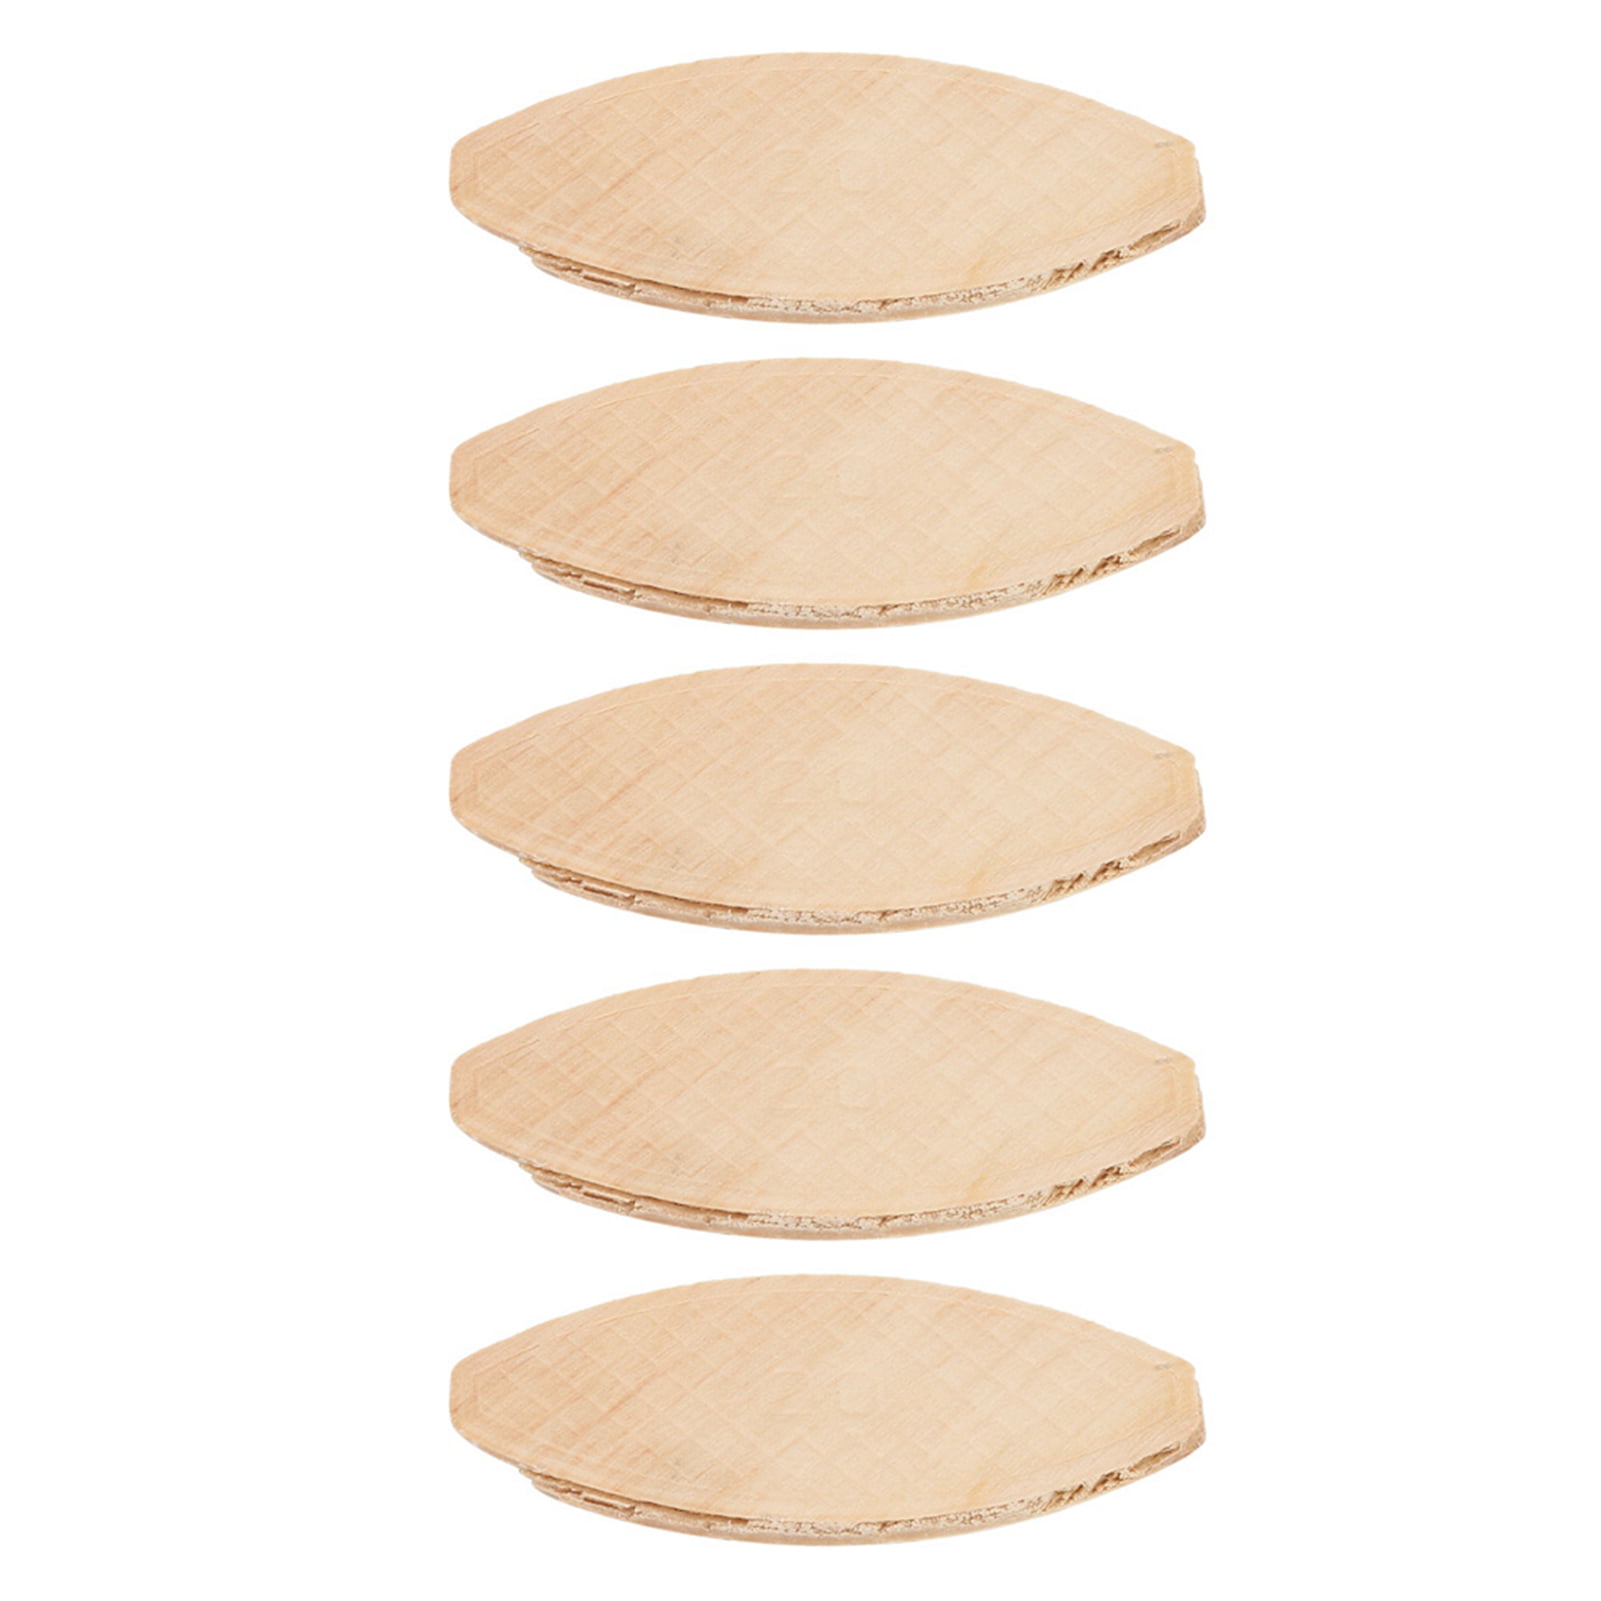 Matedepreso Wood Biscuits Joiner 100 unids/Set Fácil de Instalar Home Craft Supplies Art Durabilidad Fuerza Estabilidad para carpintería Modelo Herramienta Placas de conexión DIY 0# 